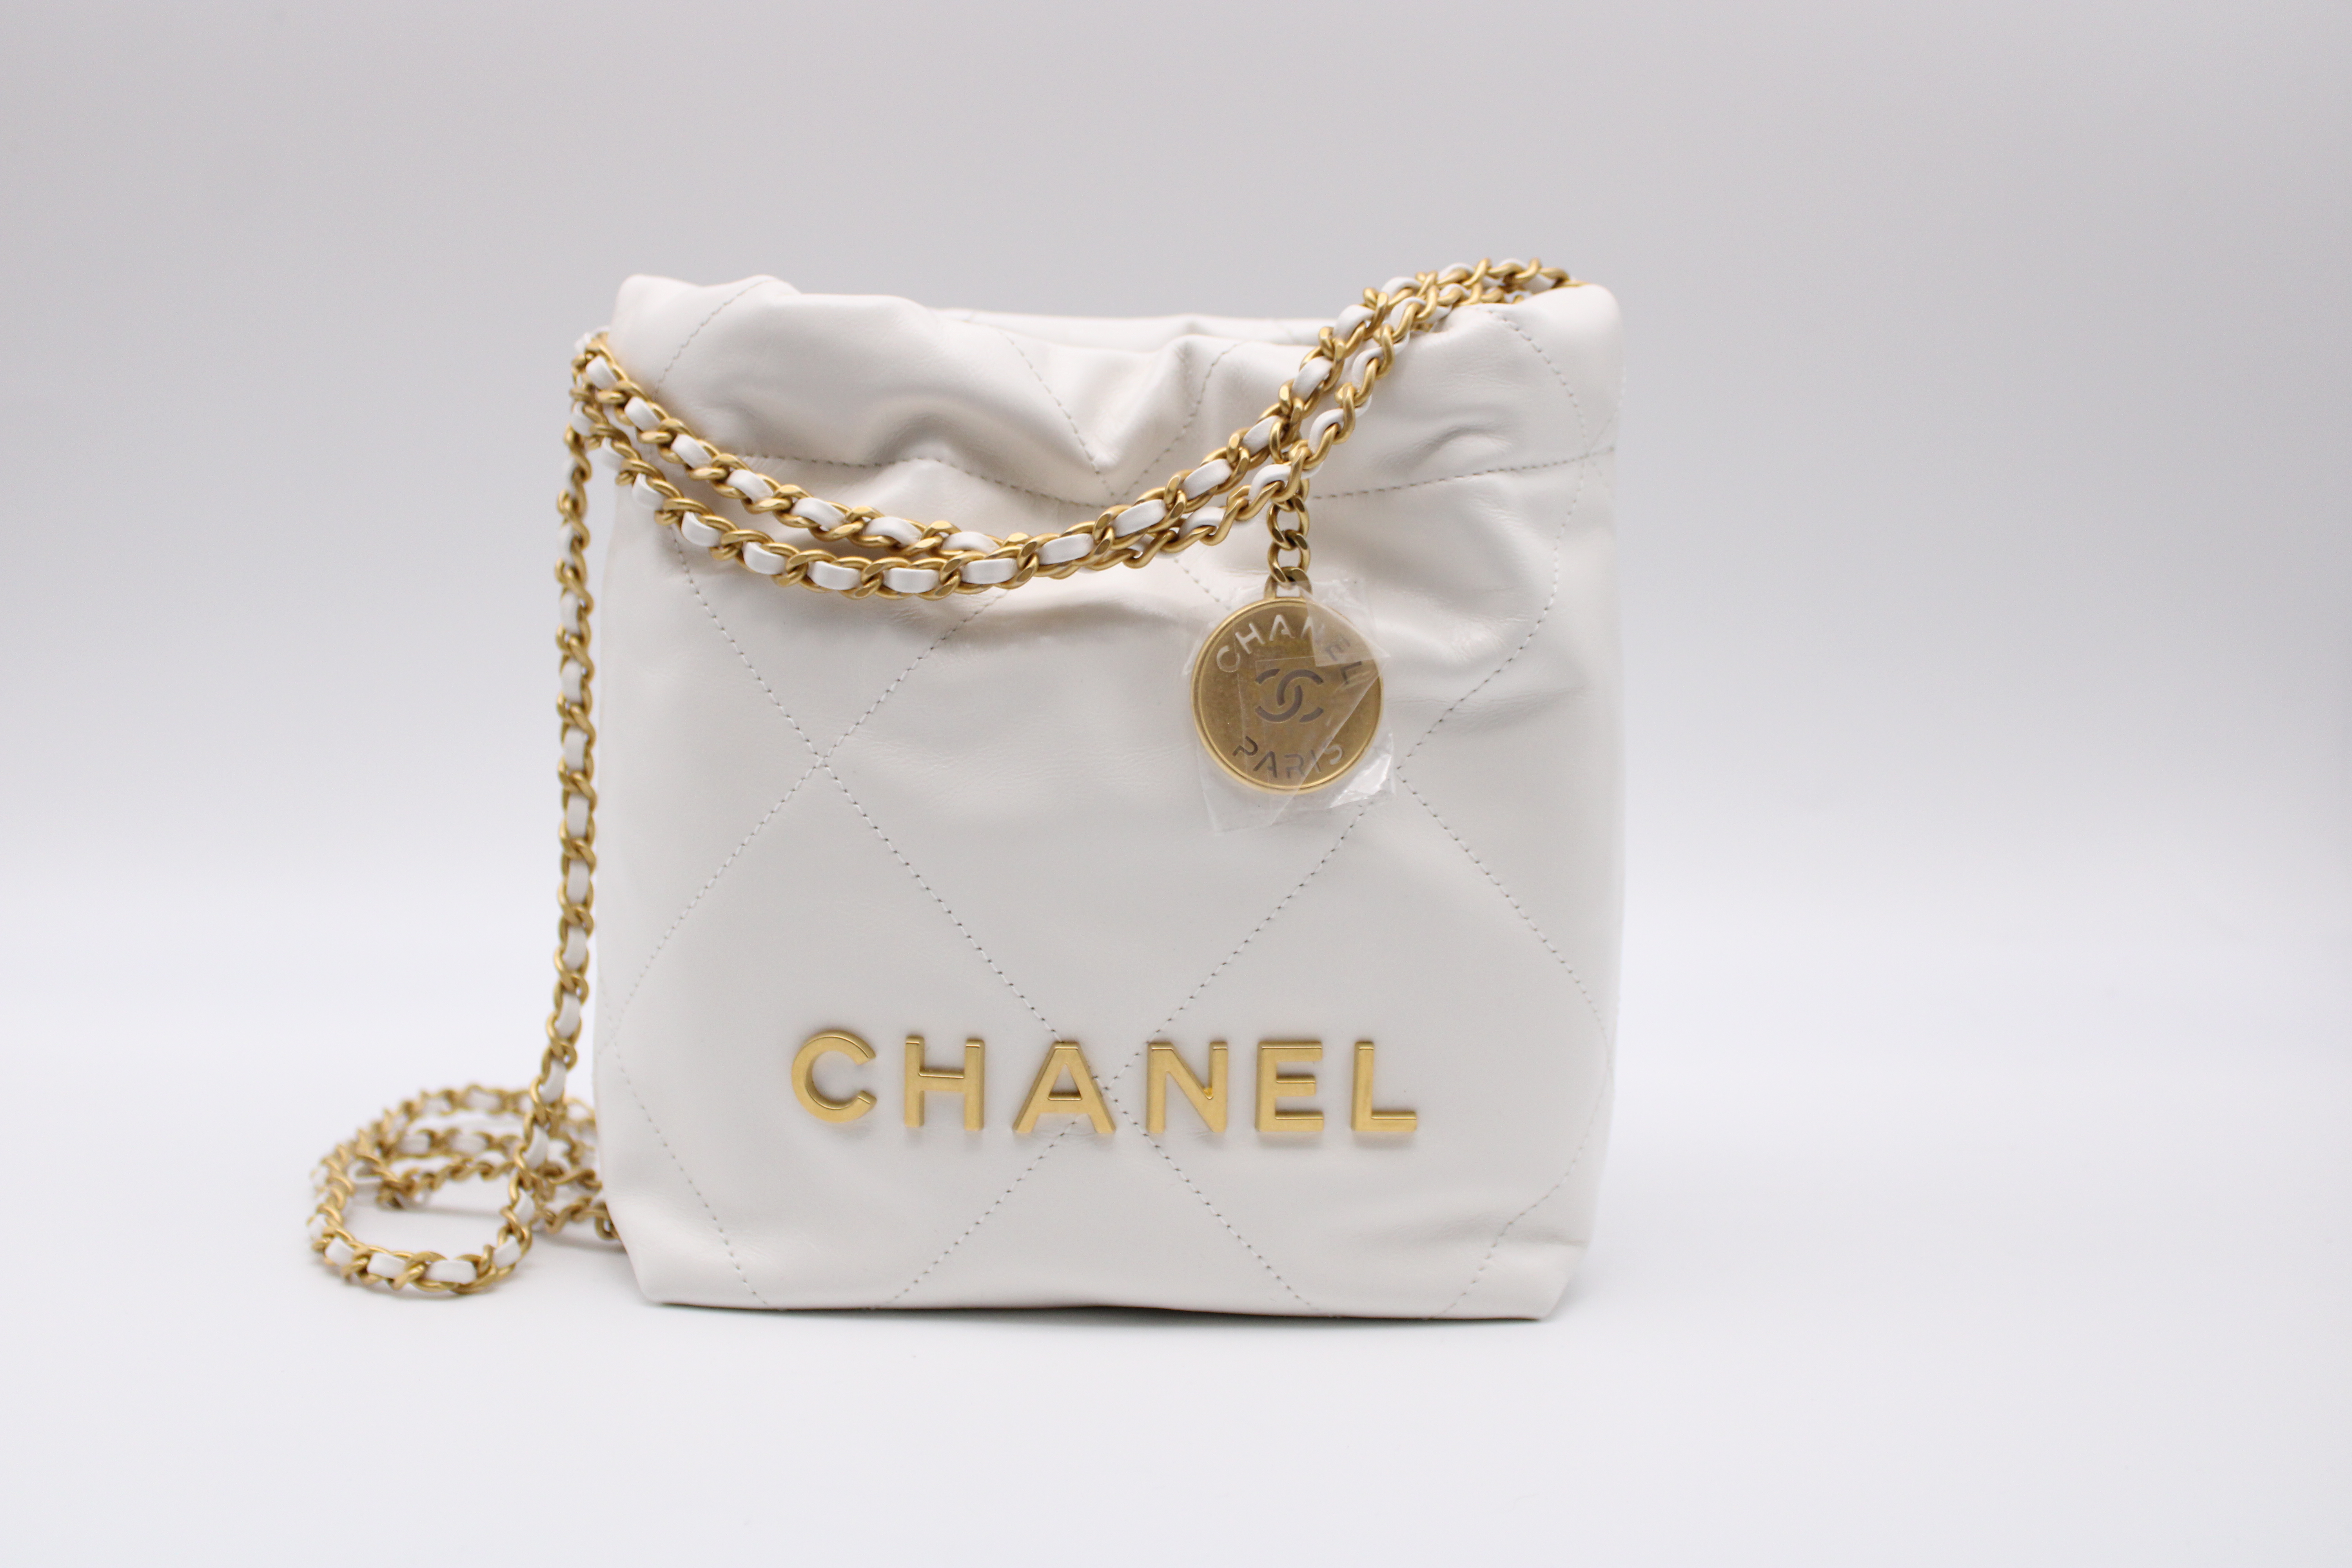 Chanel 22 Mini, White with Gold Hardware, New in Box GA006 - Julia Rose  Boston